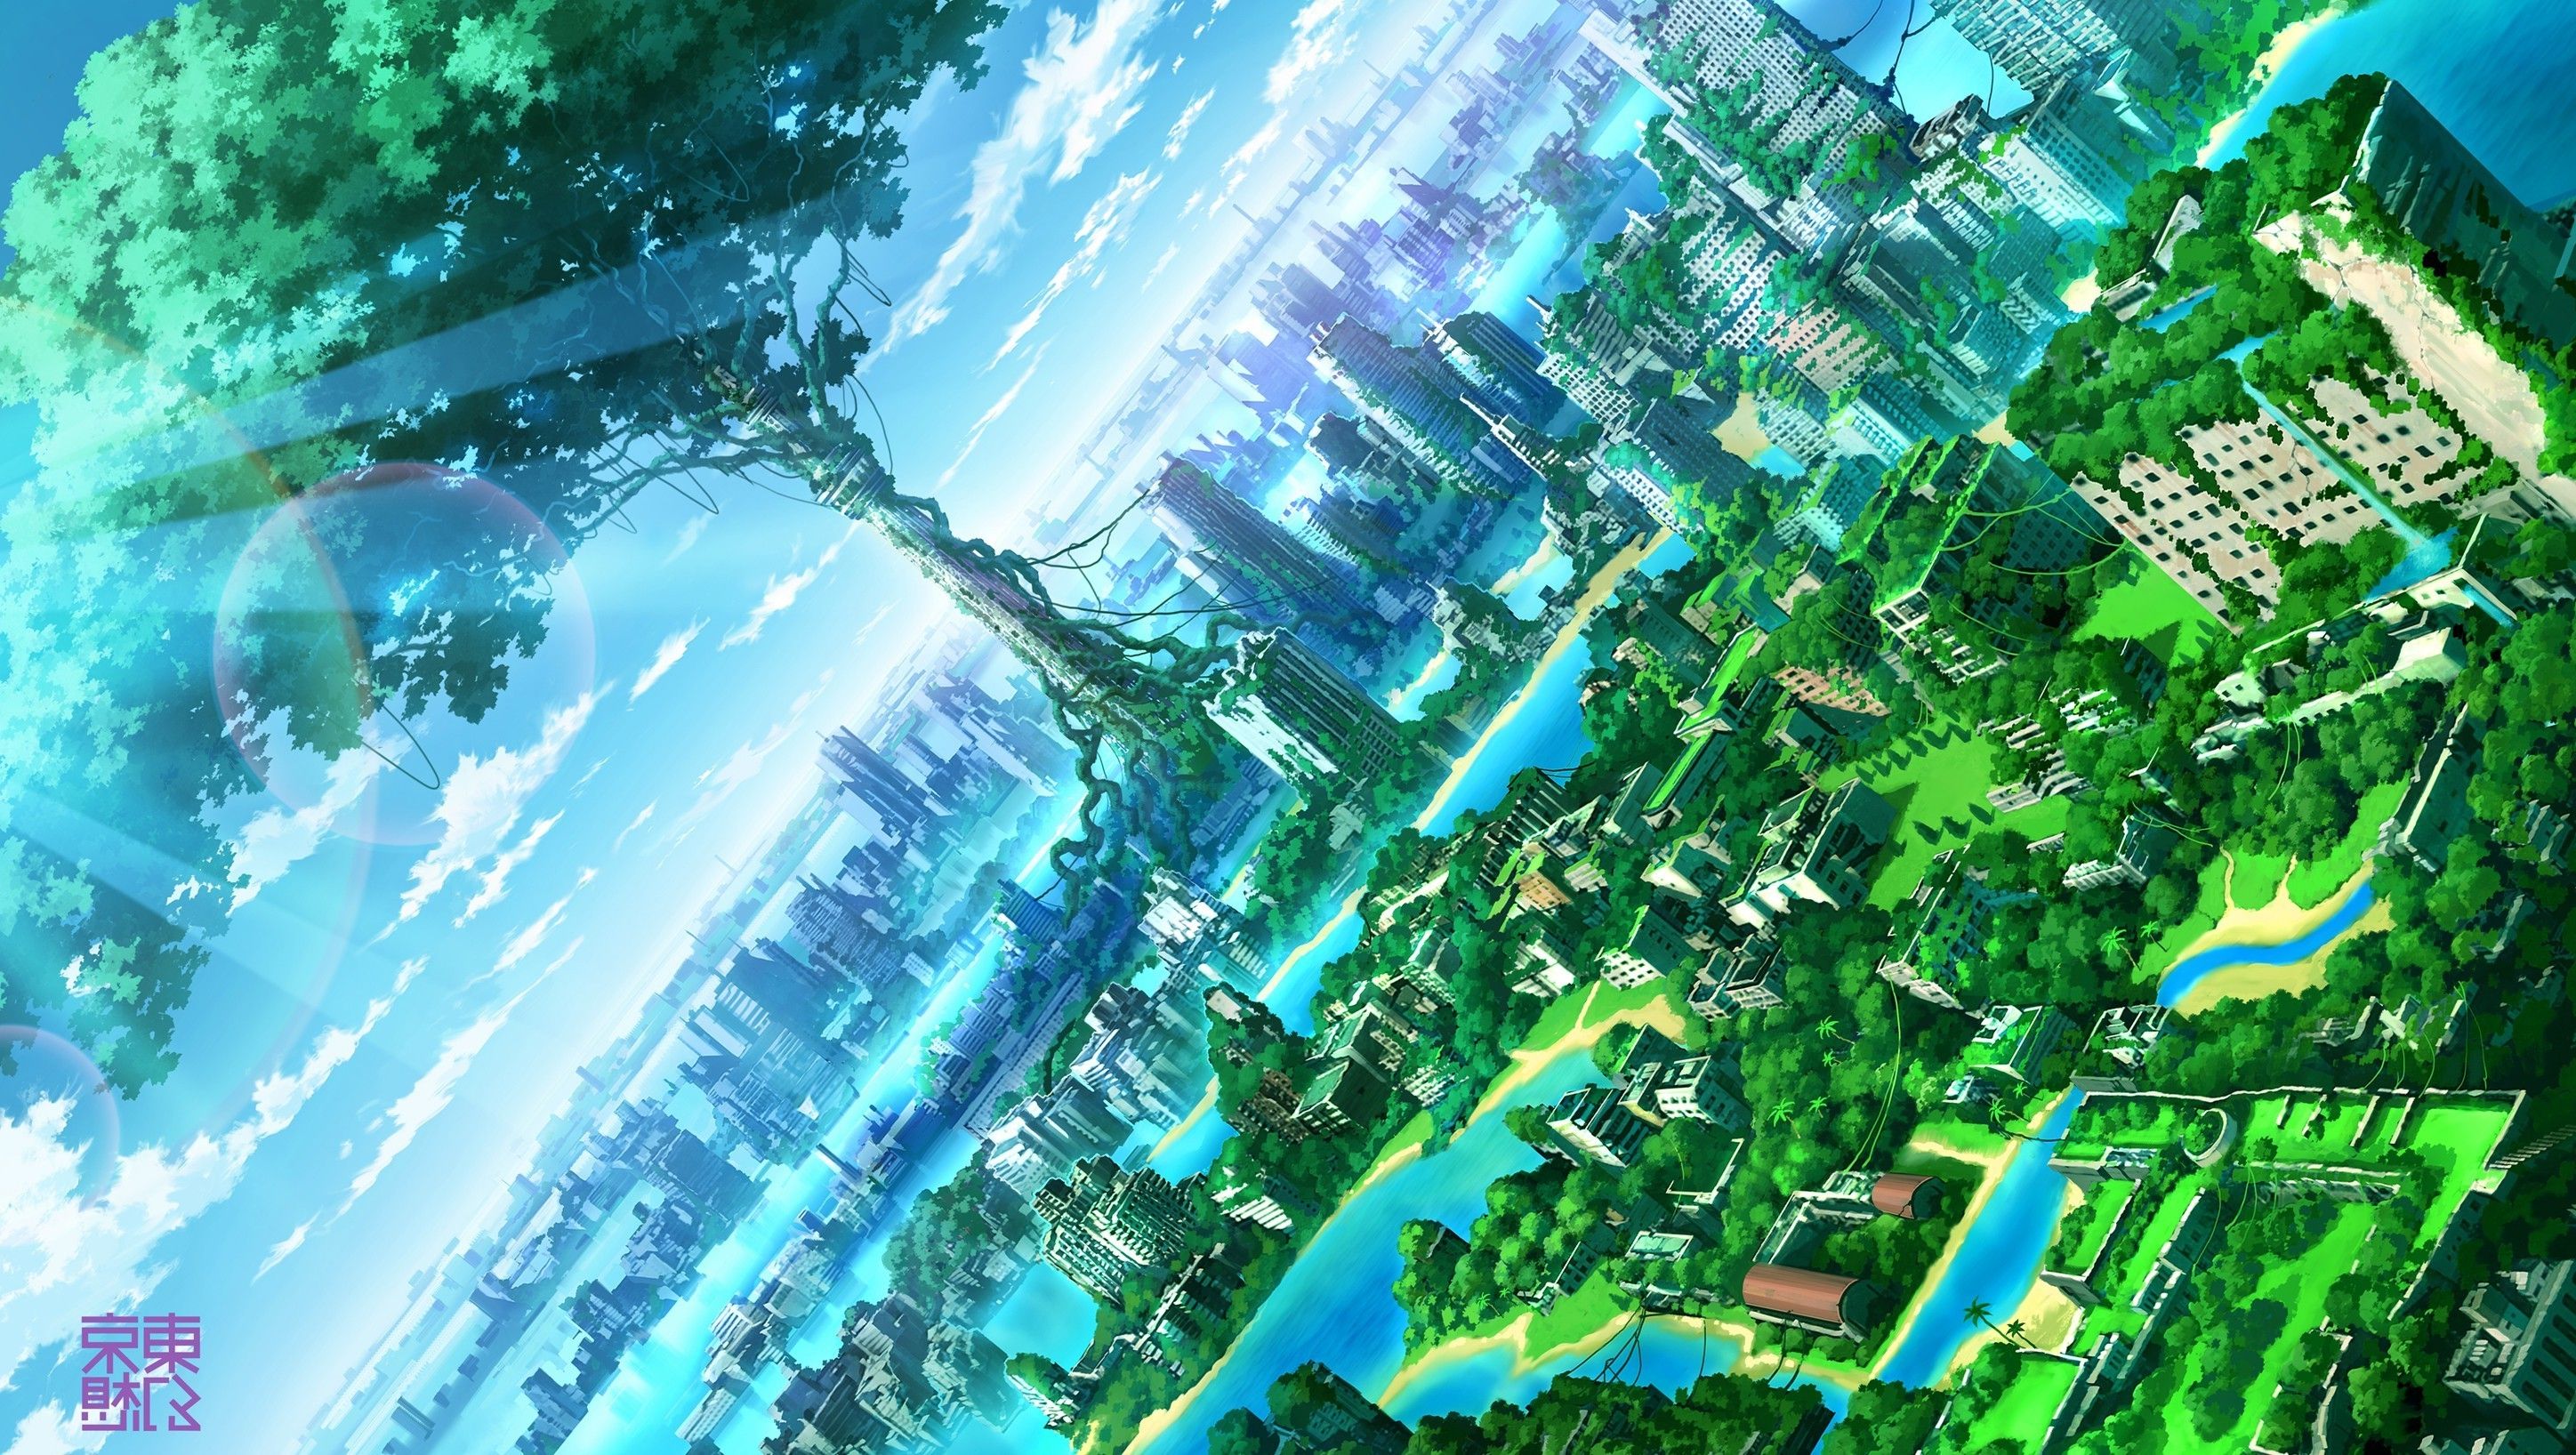 Free Wallpaper: Anime City Wallpaper HD